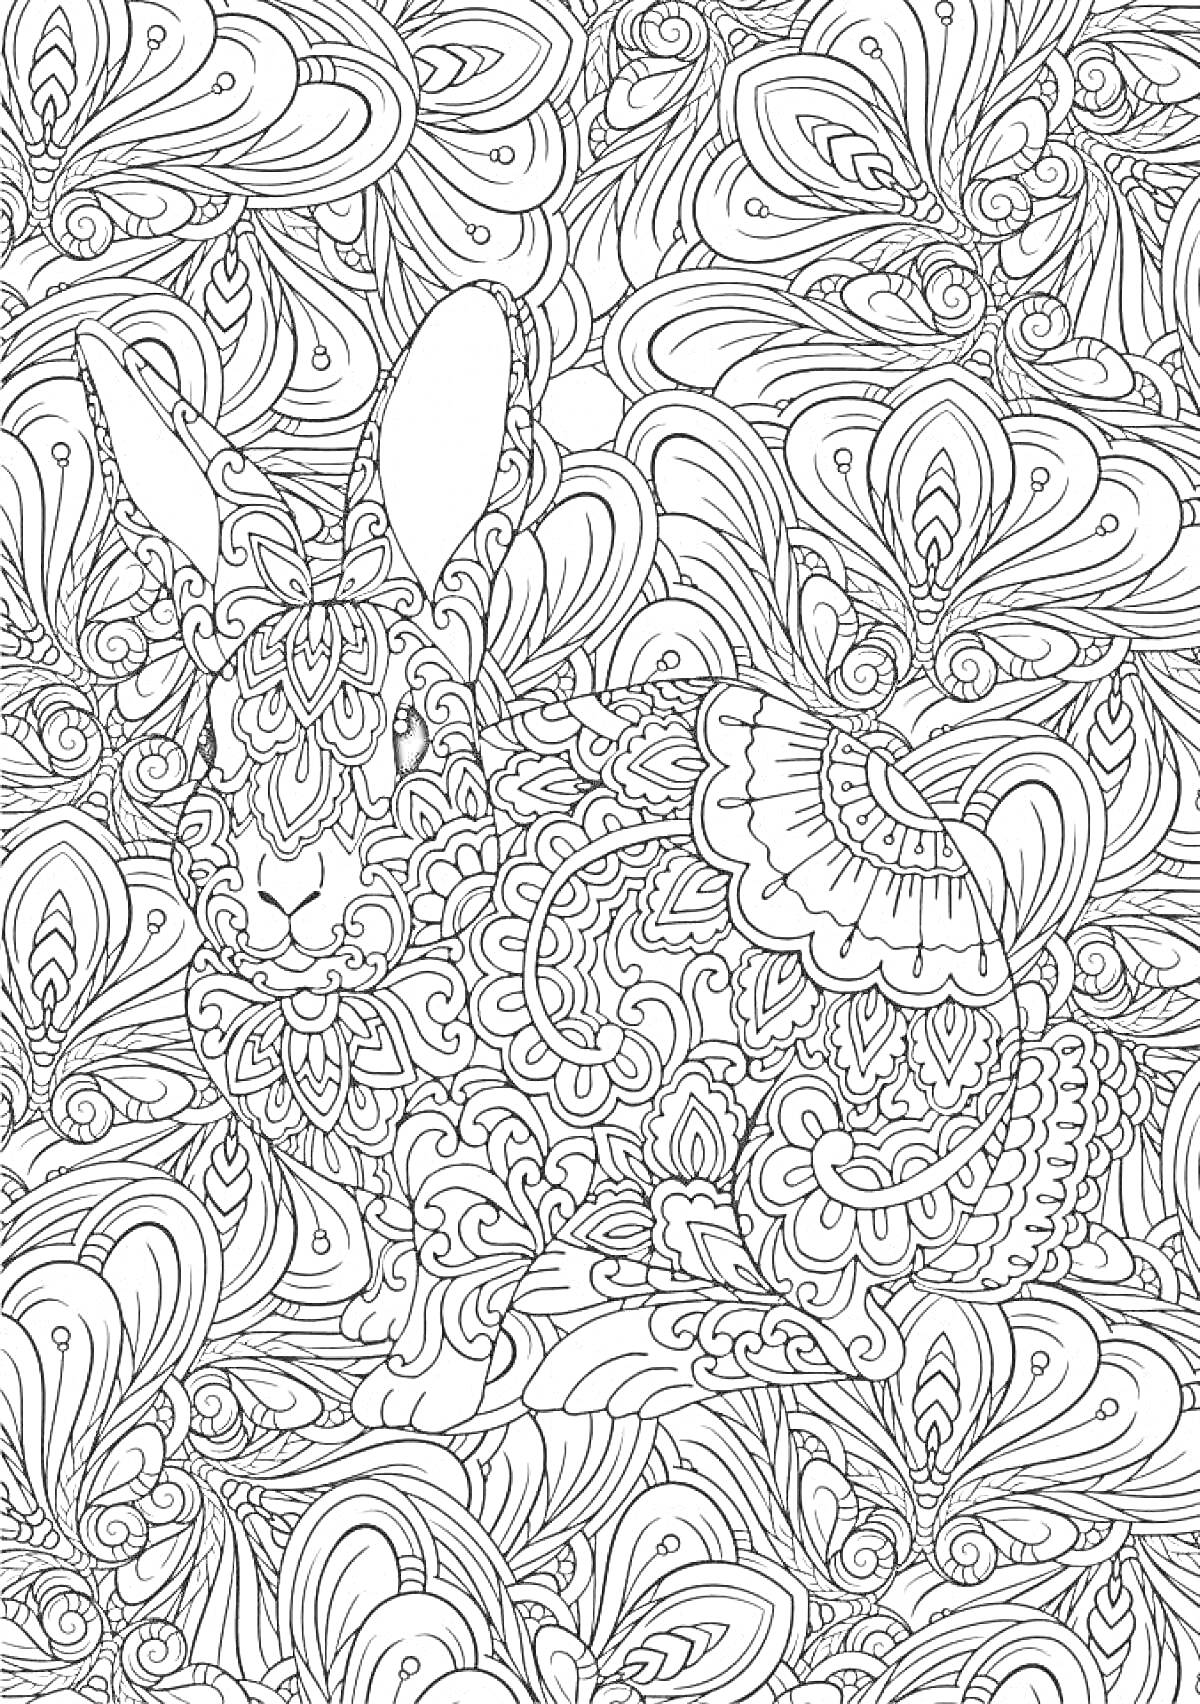 Раскраска Кролик с орнаментом из перьев и цветочных узоров